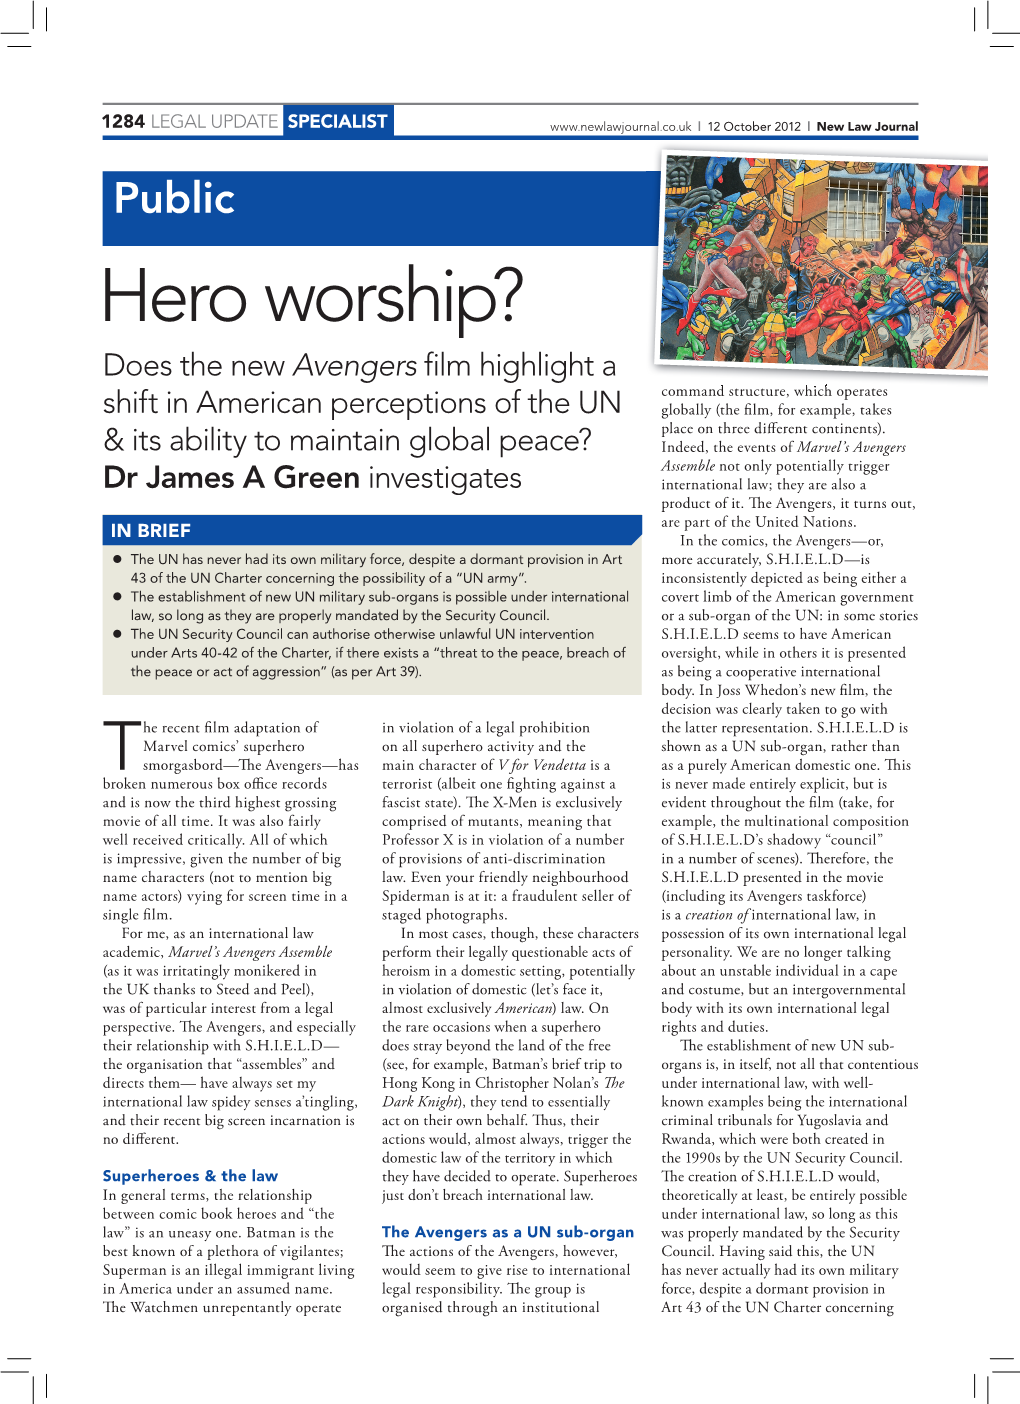 Hero Worship?